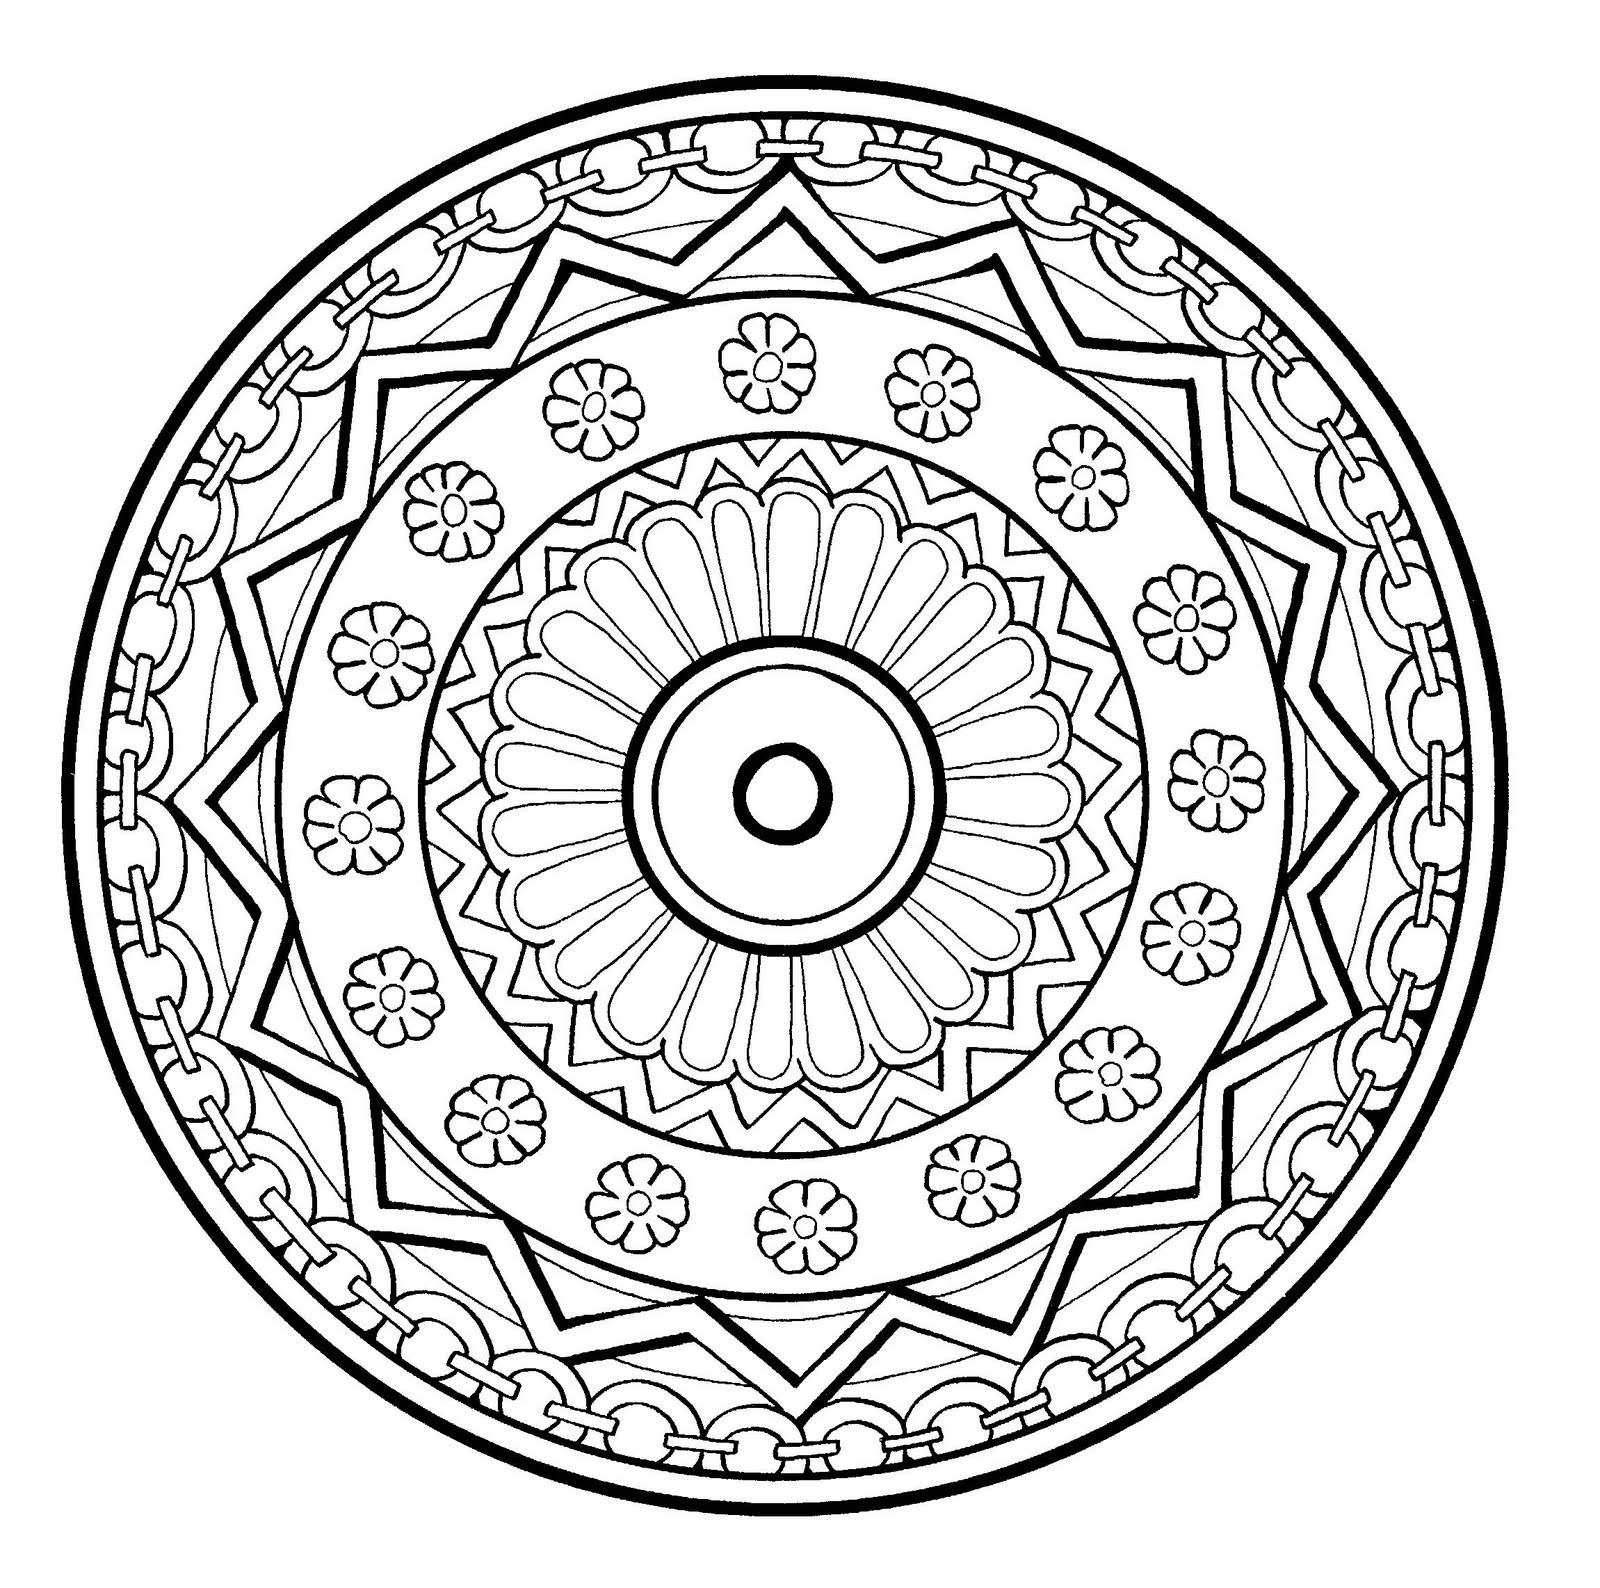 Imprimer Des Mandalas Mandala végétal à colorier - Mandalas sur le thème des Fleurs et végétation